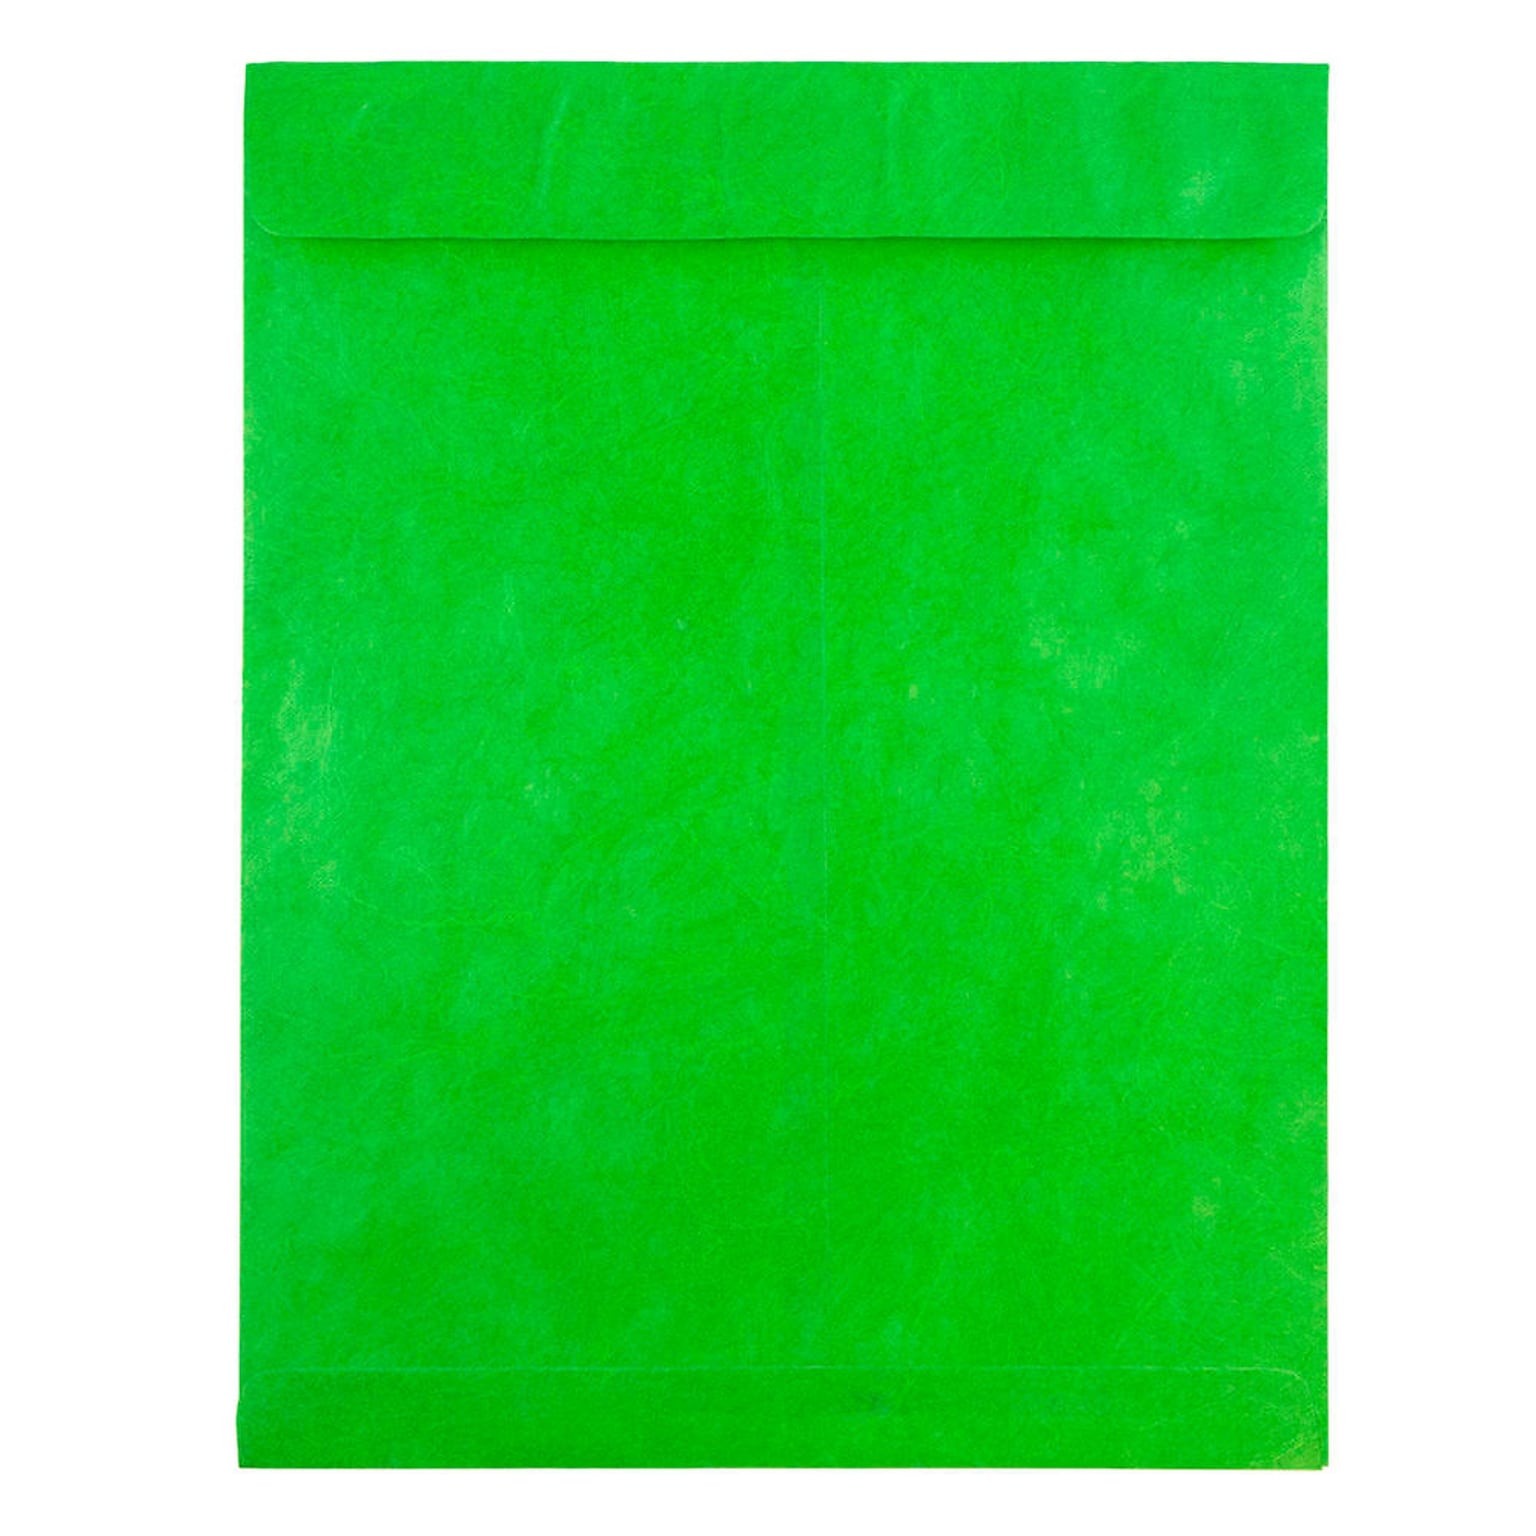 JAM Paper Tear-Proof Tyvek Open End Catalog Envelopes, 10 x 13, Lime Green, 25/Pack (V021381)